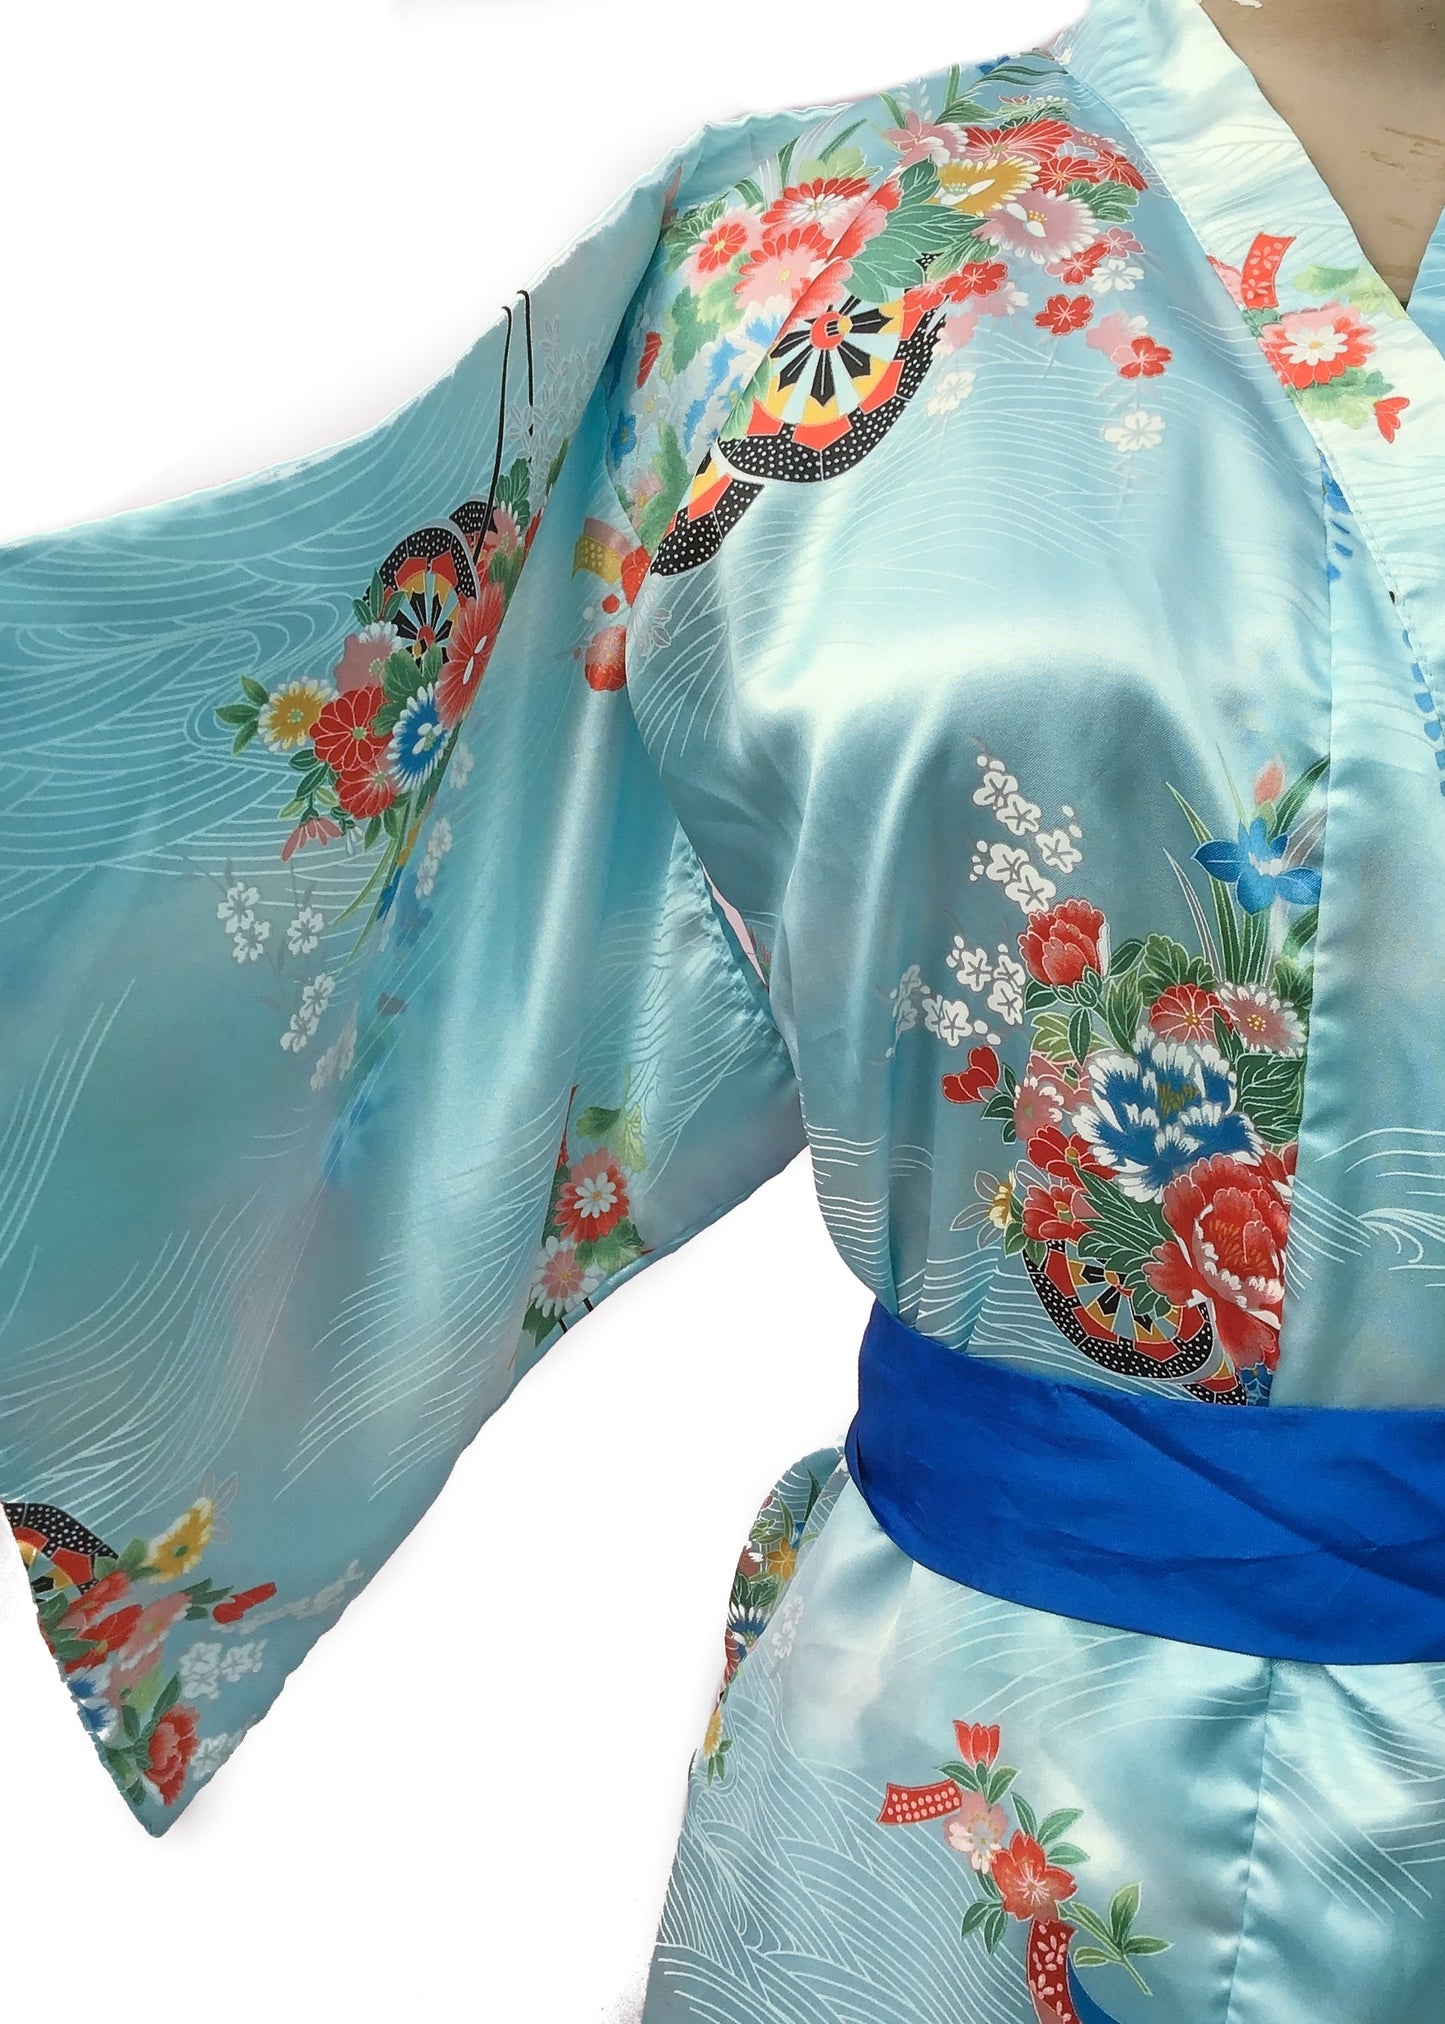 Pale Blue Silky Kimono Robe Flower Pattern